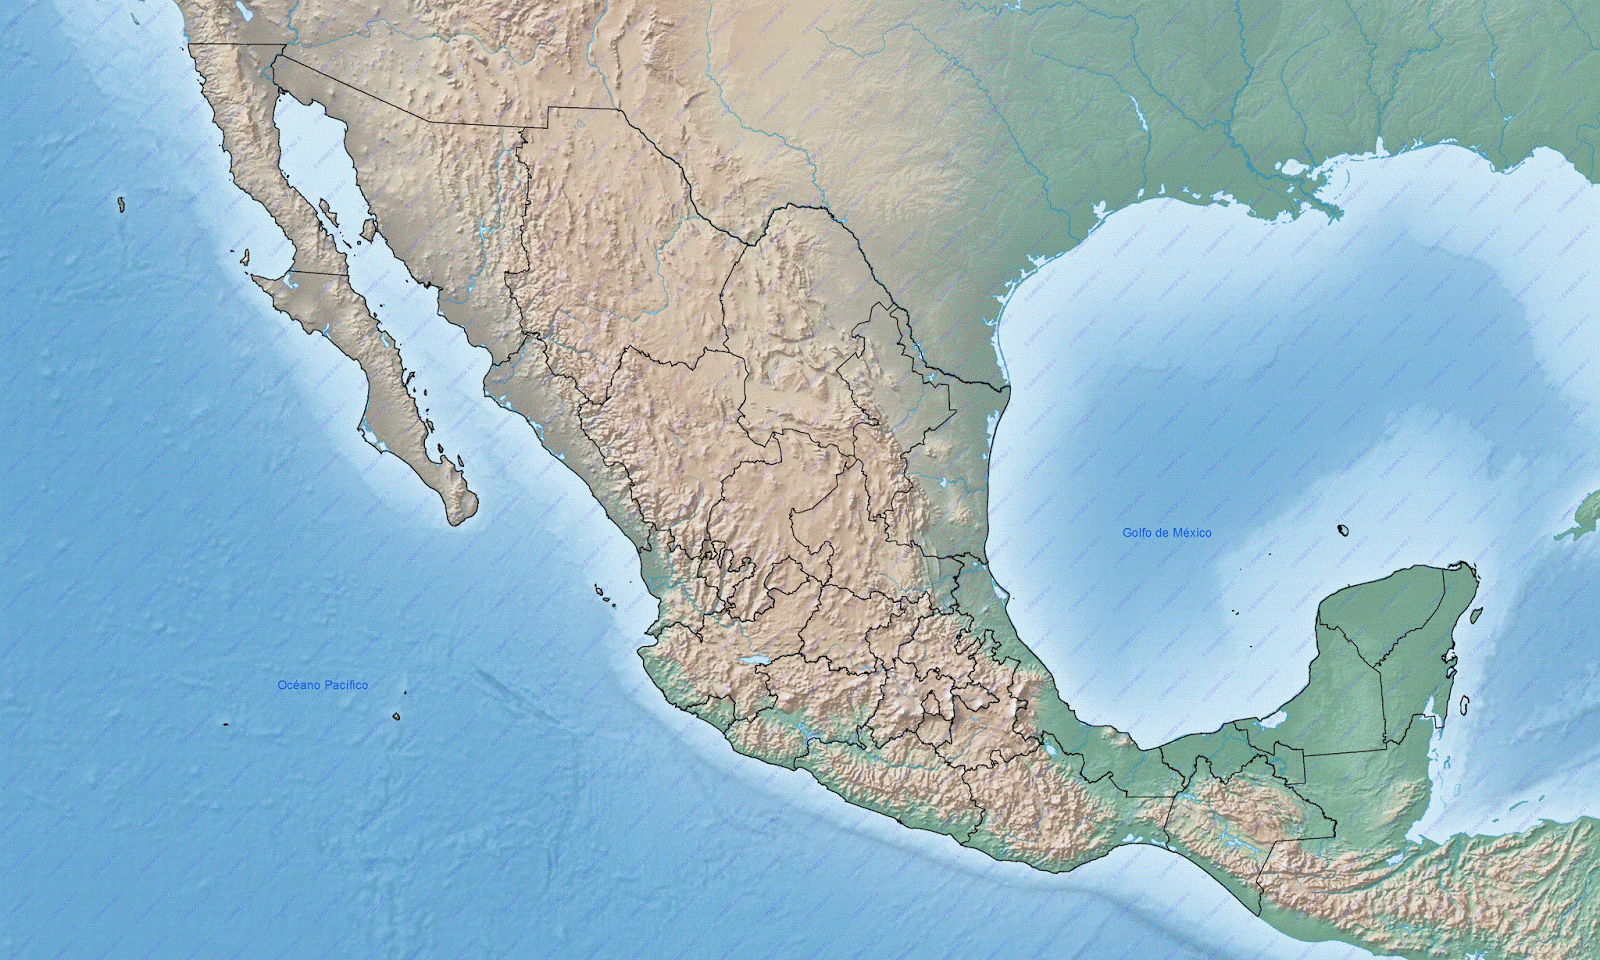 25 Increible Mapa De Mexico Via Satelite Images